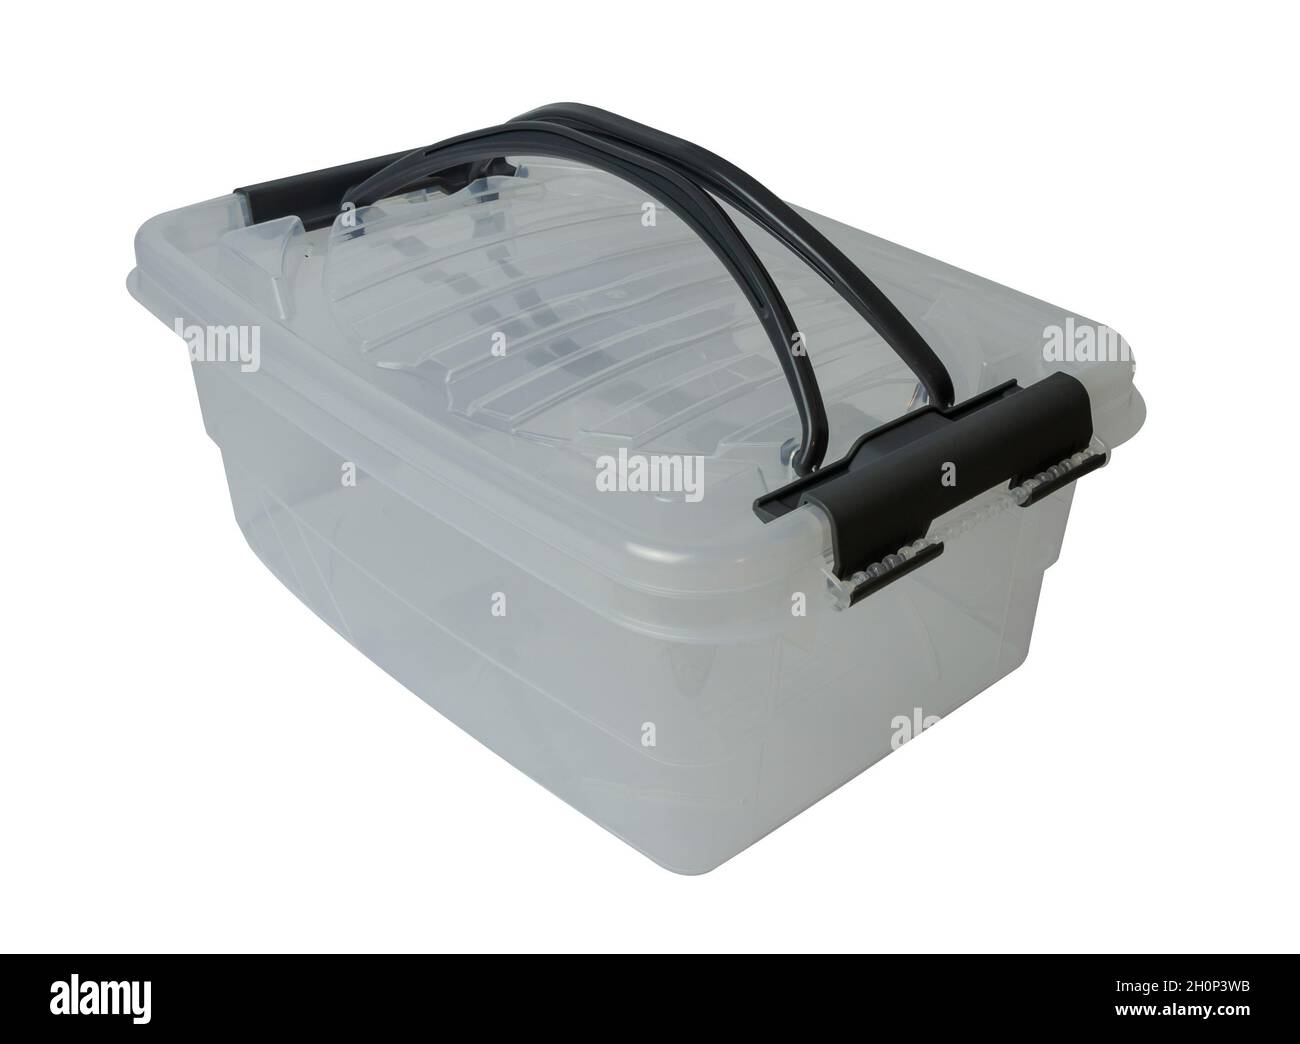 scatole e contenitori in plastica per lo stoccaggio e il trasporto di  utensili e di piccoli oggetti vari della gamma Foto stock - Alamy